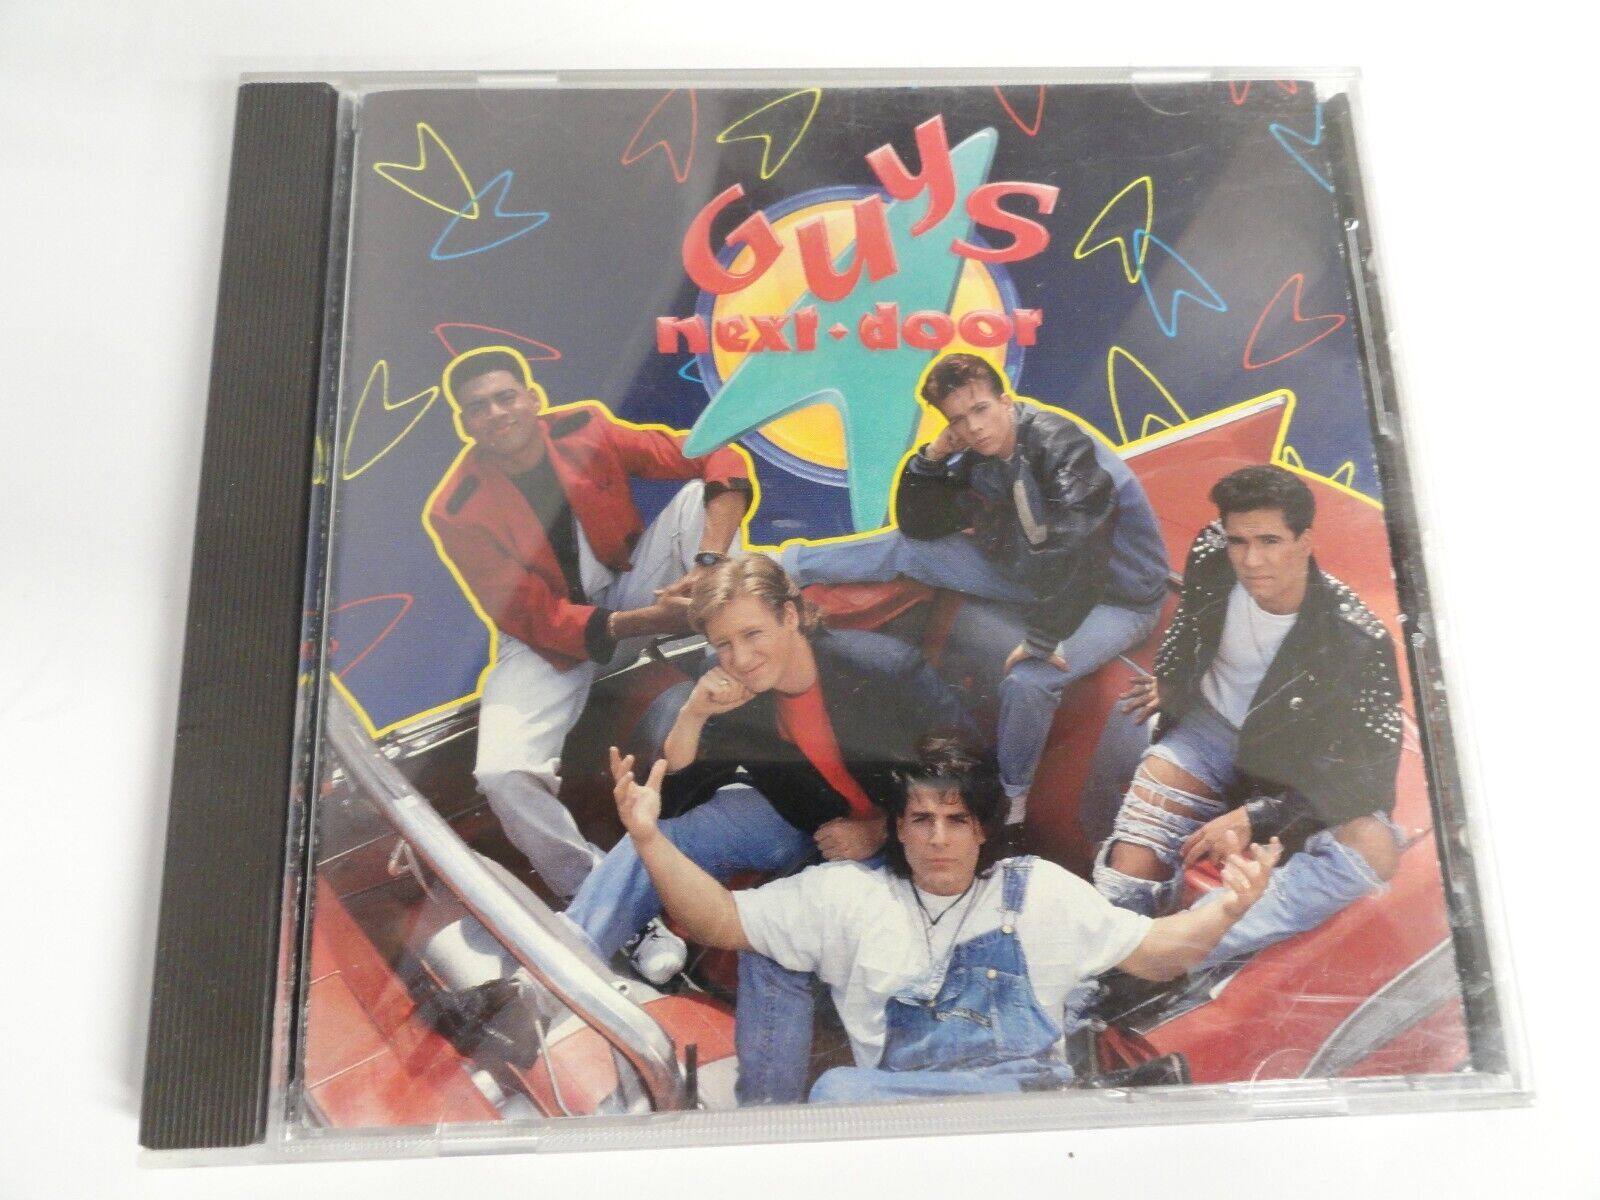 GUYS NEXT DOOR - Self-Titled (1990) - CD - COMPLETE